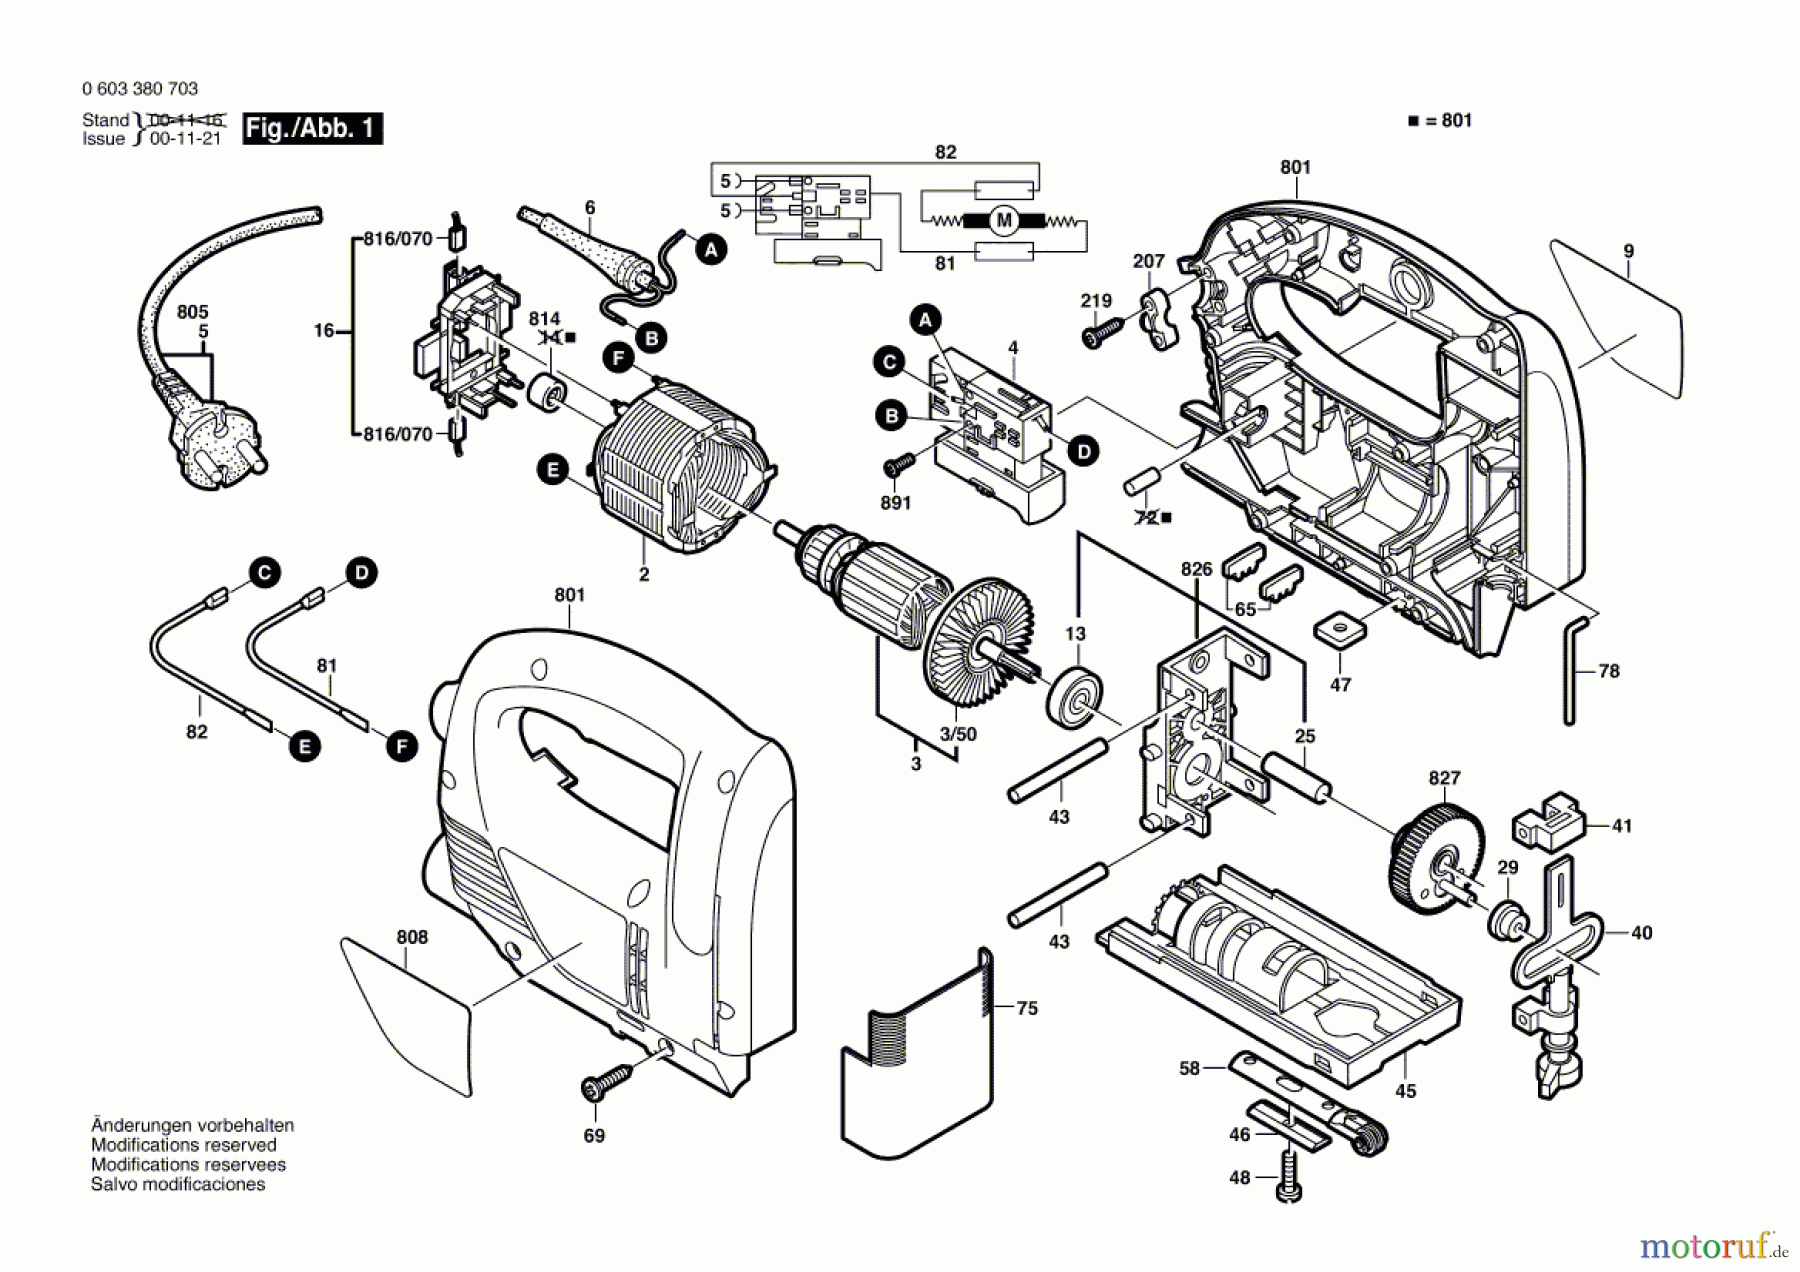  Bosch Werkzeug Stichsäge PST 6500 E Seite 1